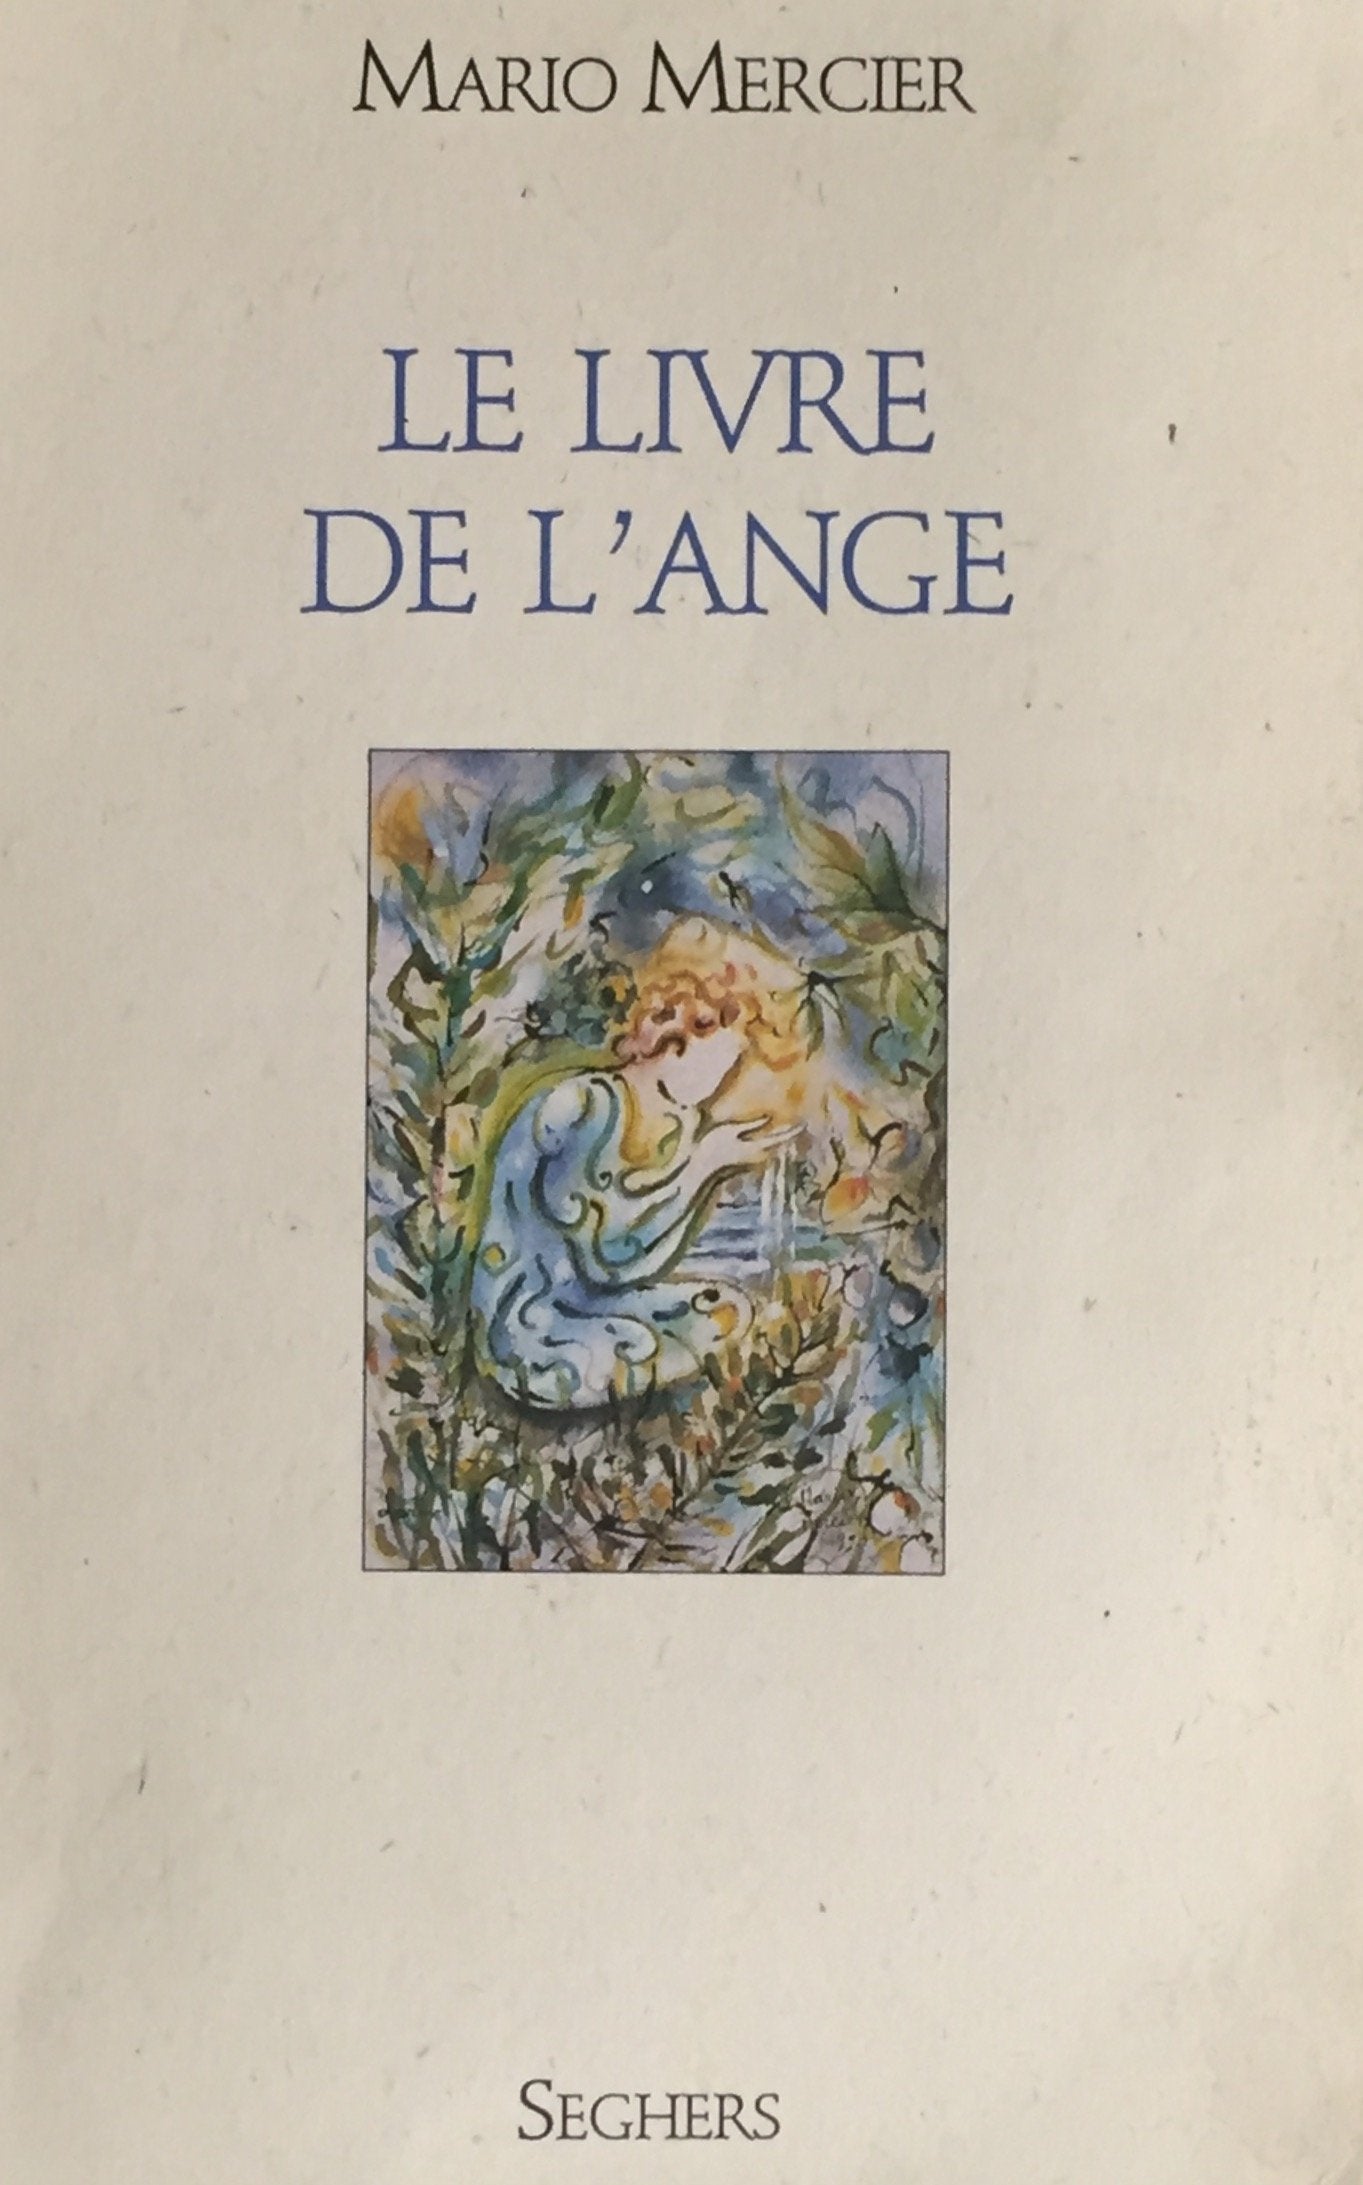 Livre ISBN 2232104613 Le livre de l'ange (Mario Mercier)